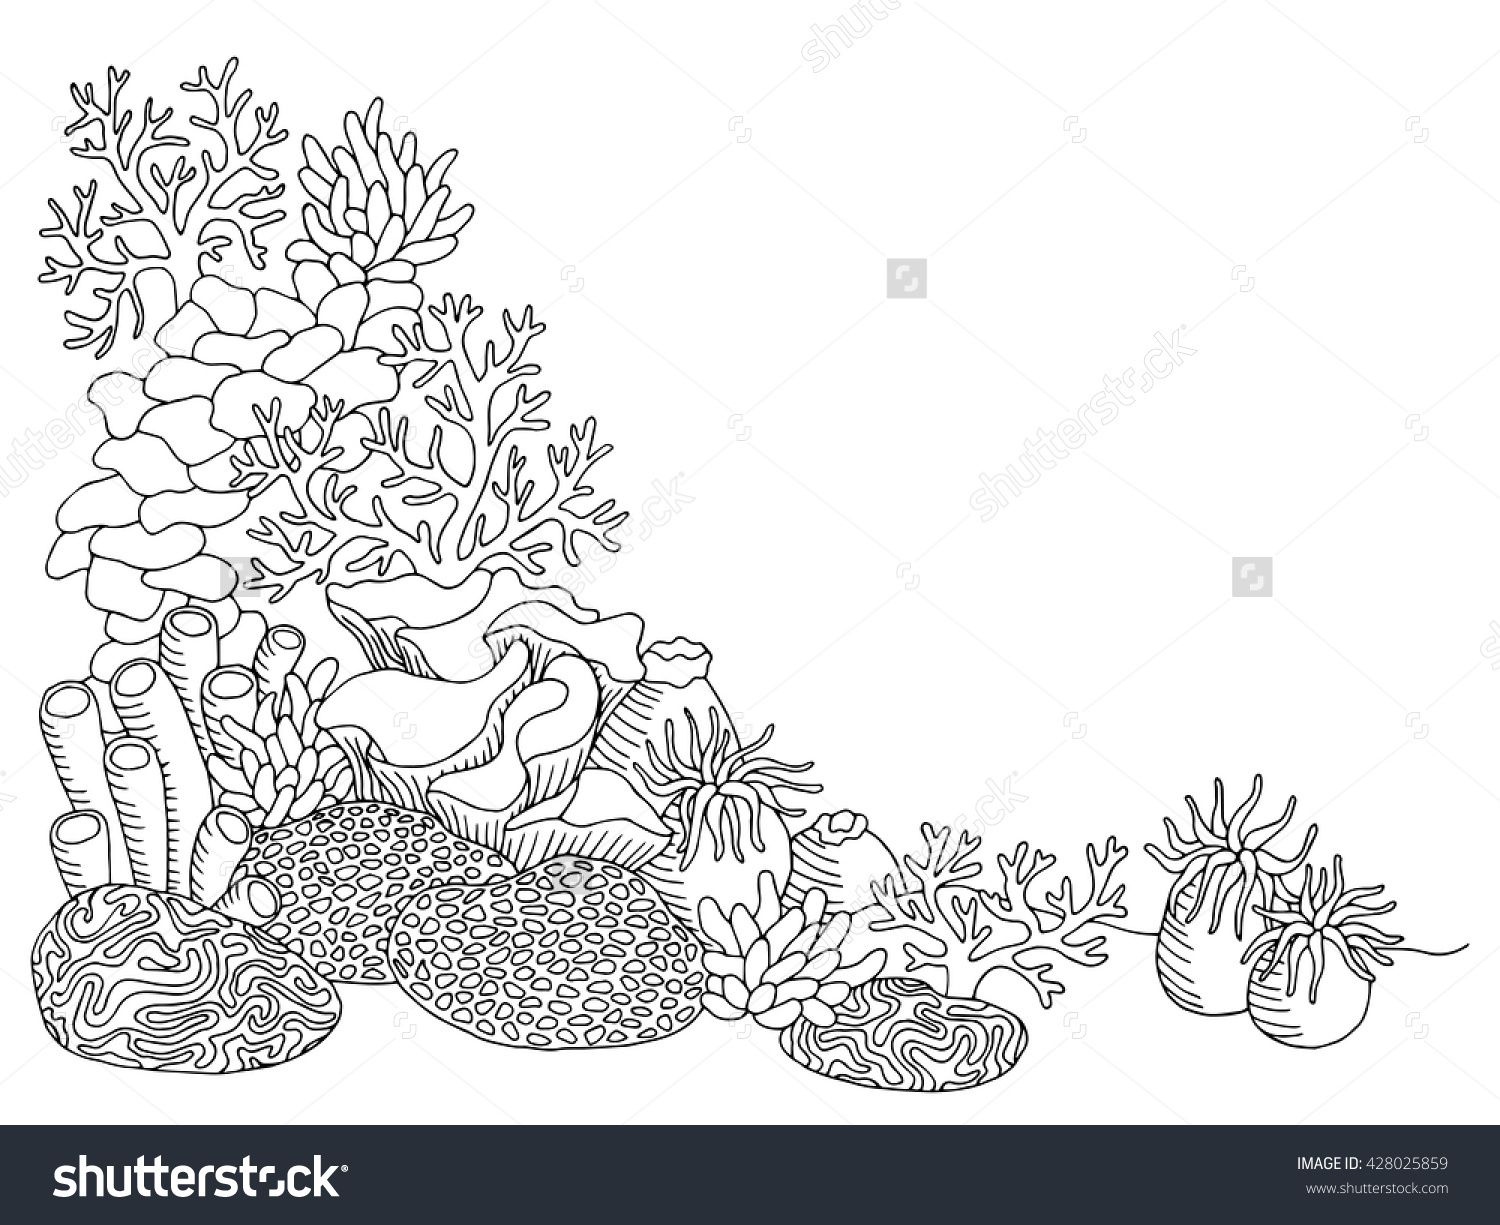 Coral sea graphic.